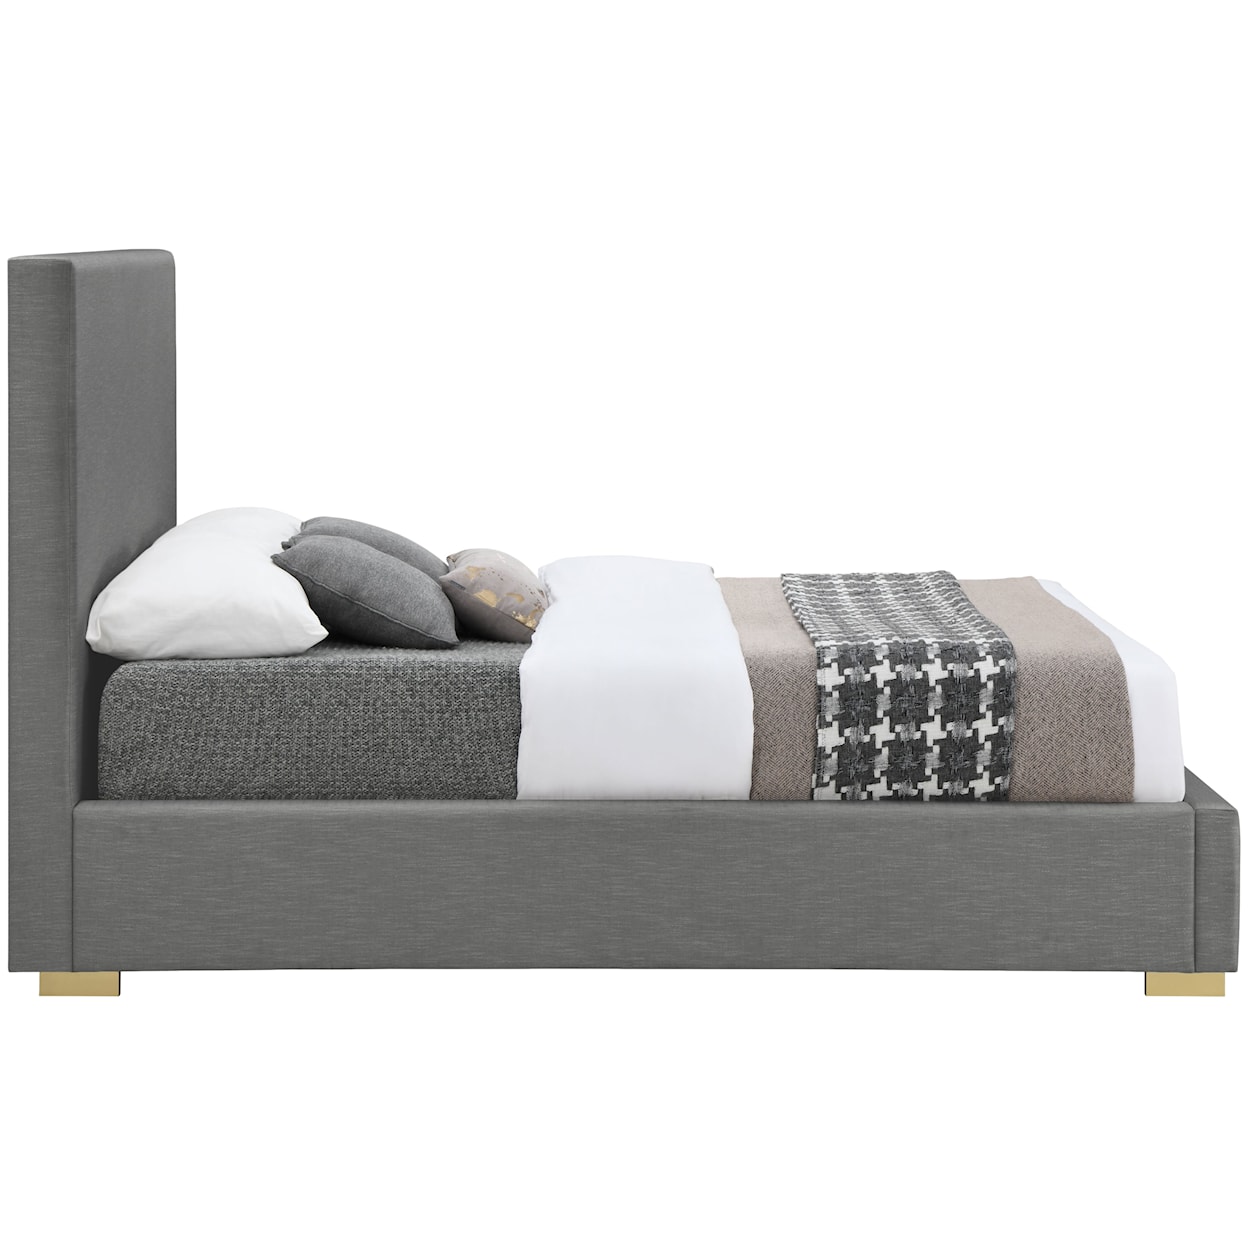 Meridian Furniture Crosby Queen Bed